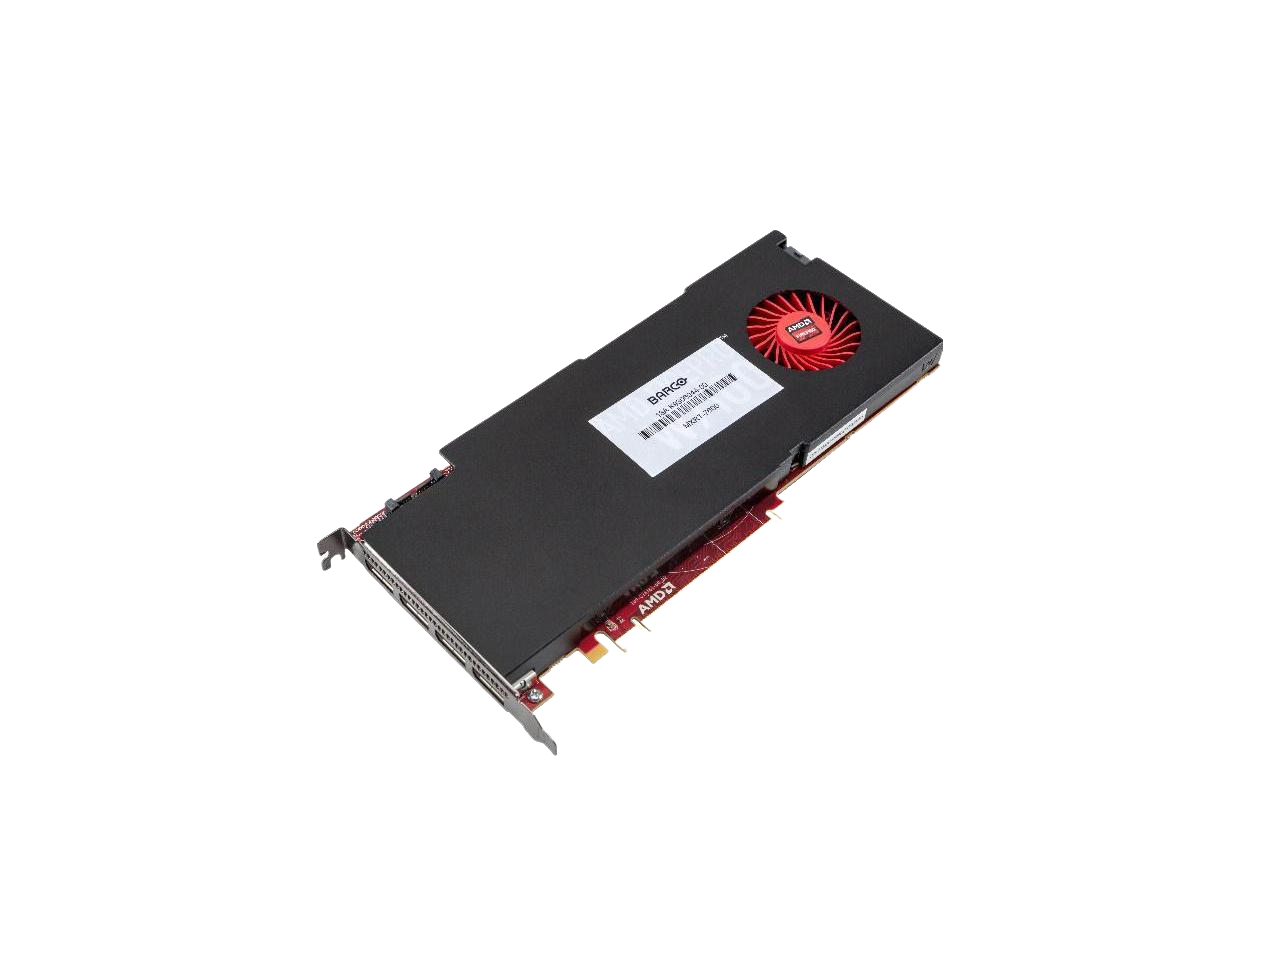 AMD MXRT-7600 3D 8GB GDDR5 PCIe 3.0 x16 4 x DisplayPort Workstation Graphics Card